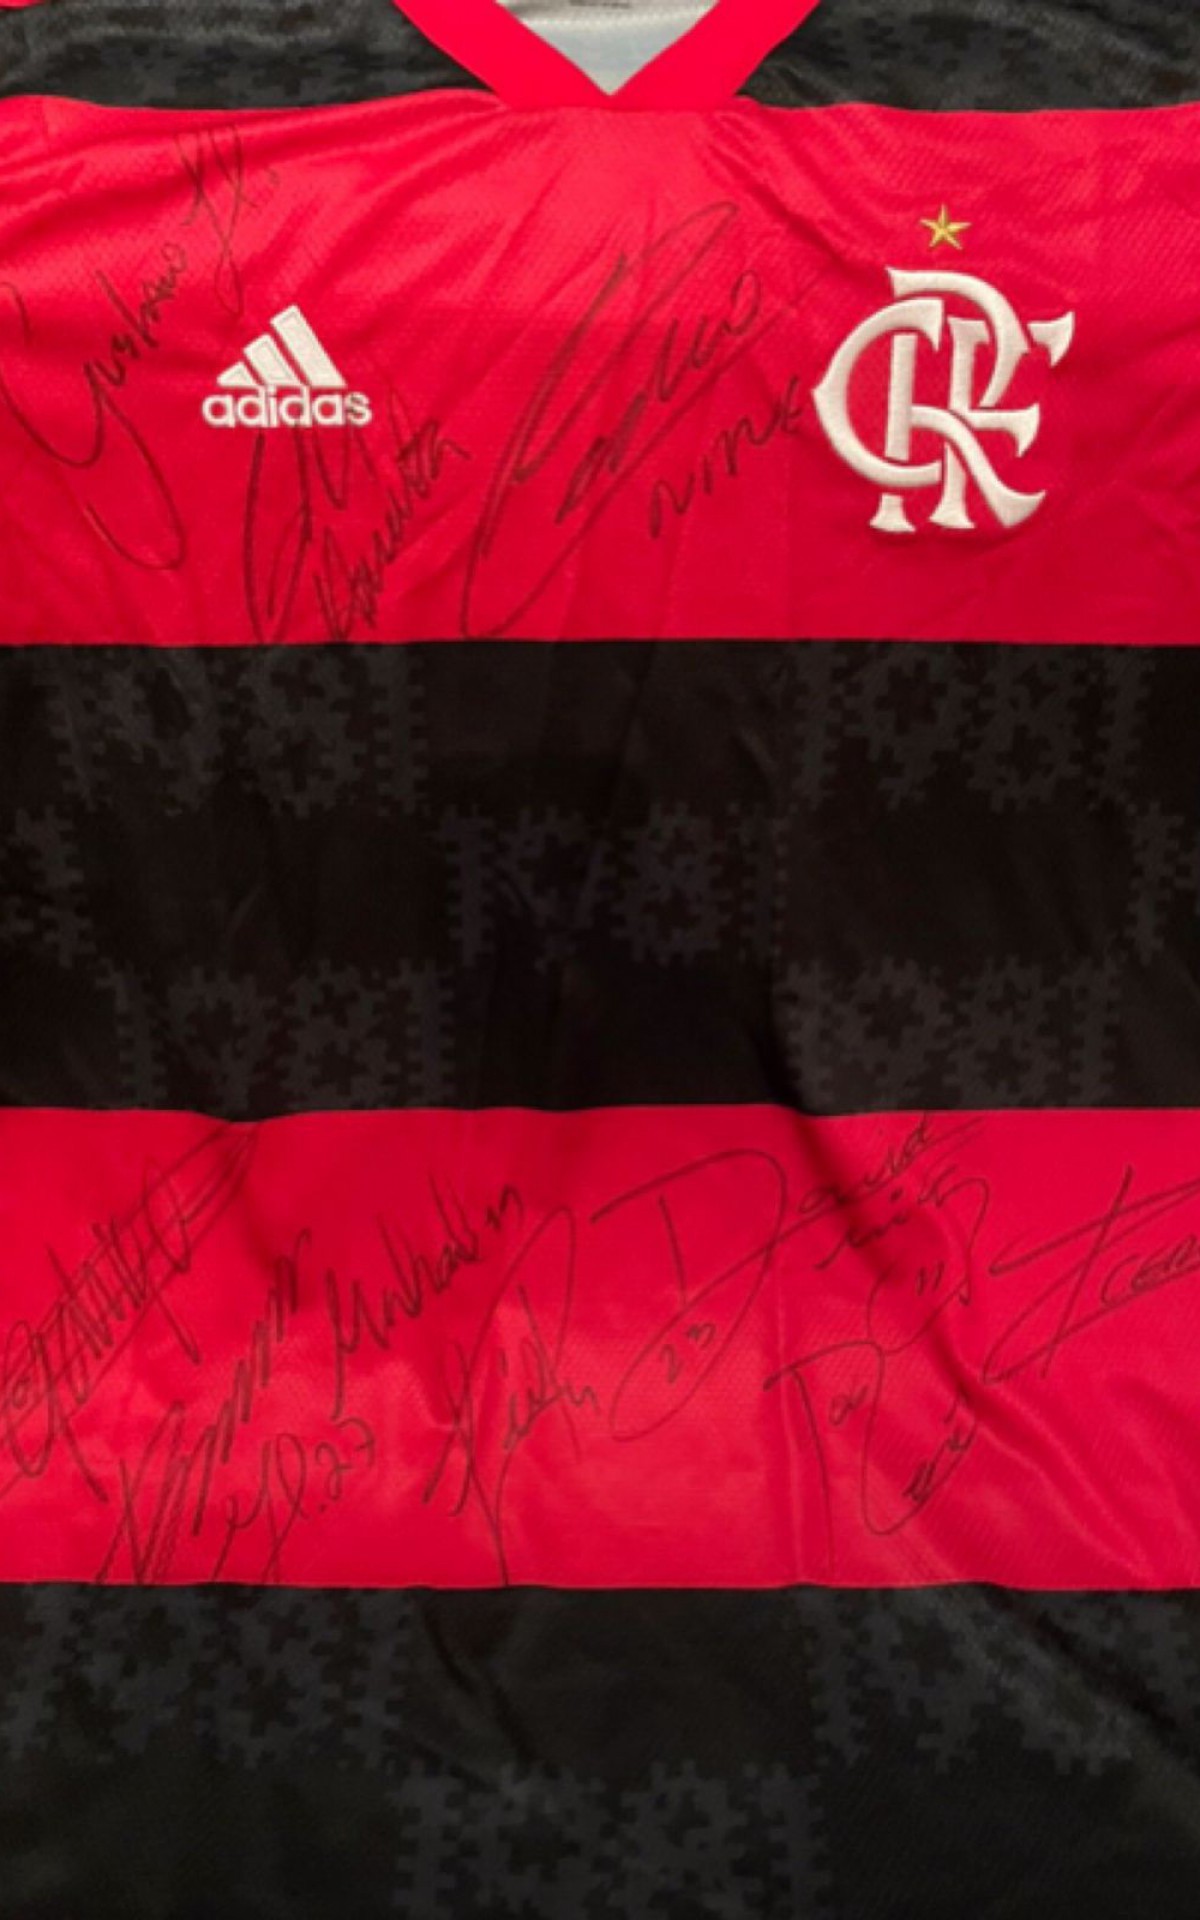 Flamengo recebe novo aceno da Europa e pode lucrar com venda de